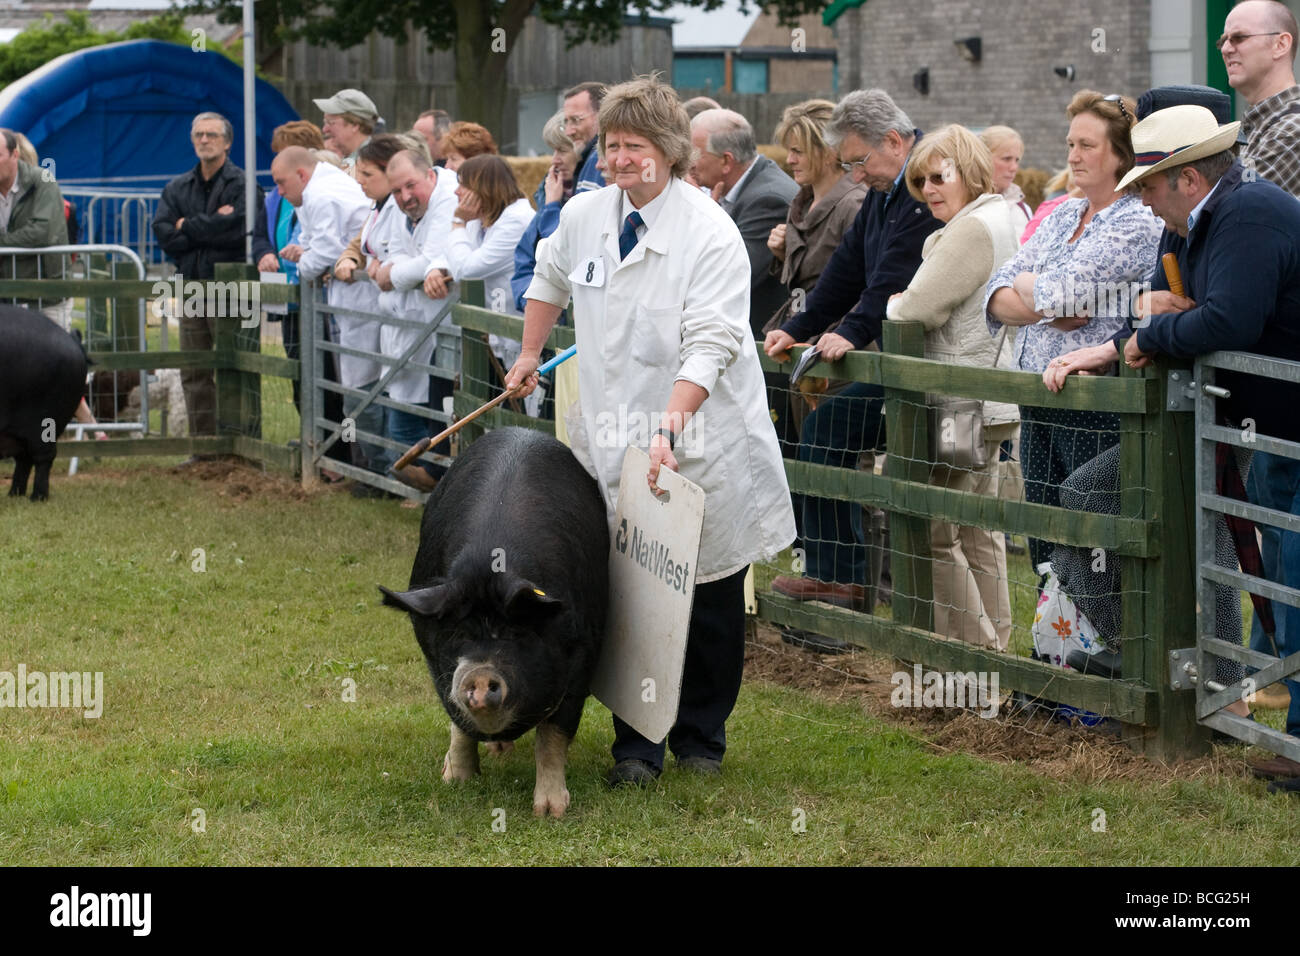 Zeigen Schweine auf der letzten königlichen Show 2009 Stockfoto